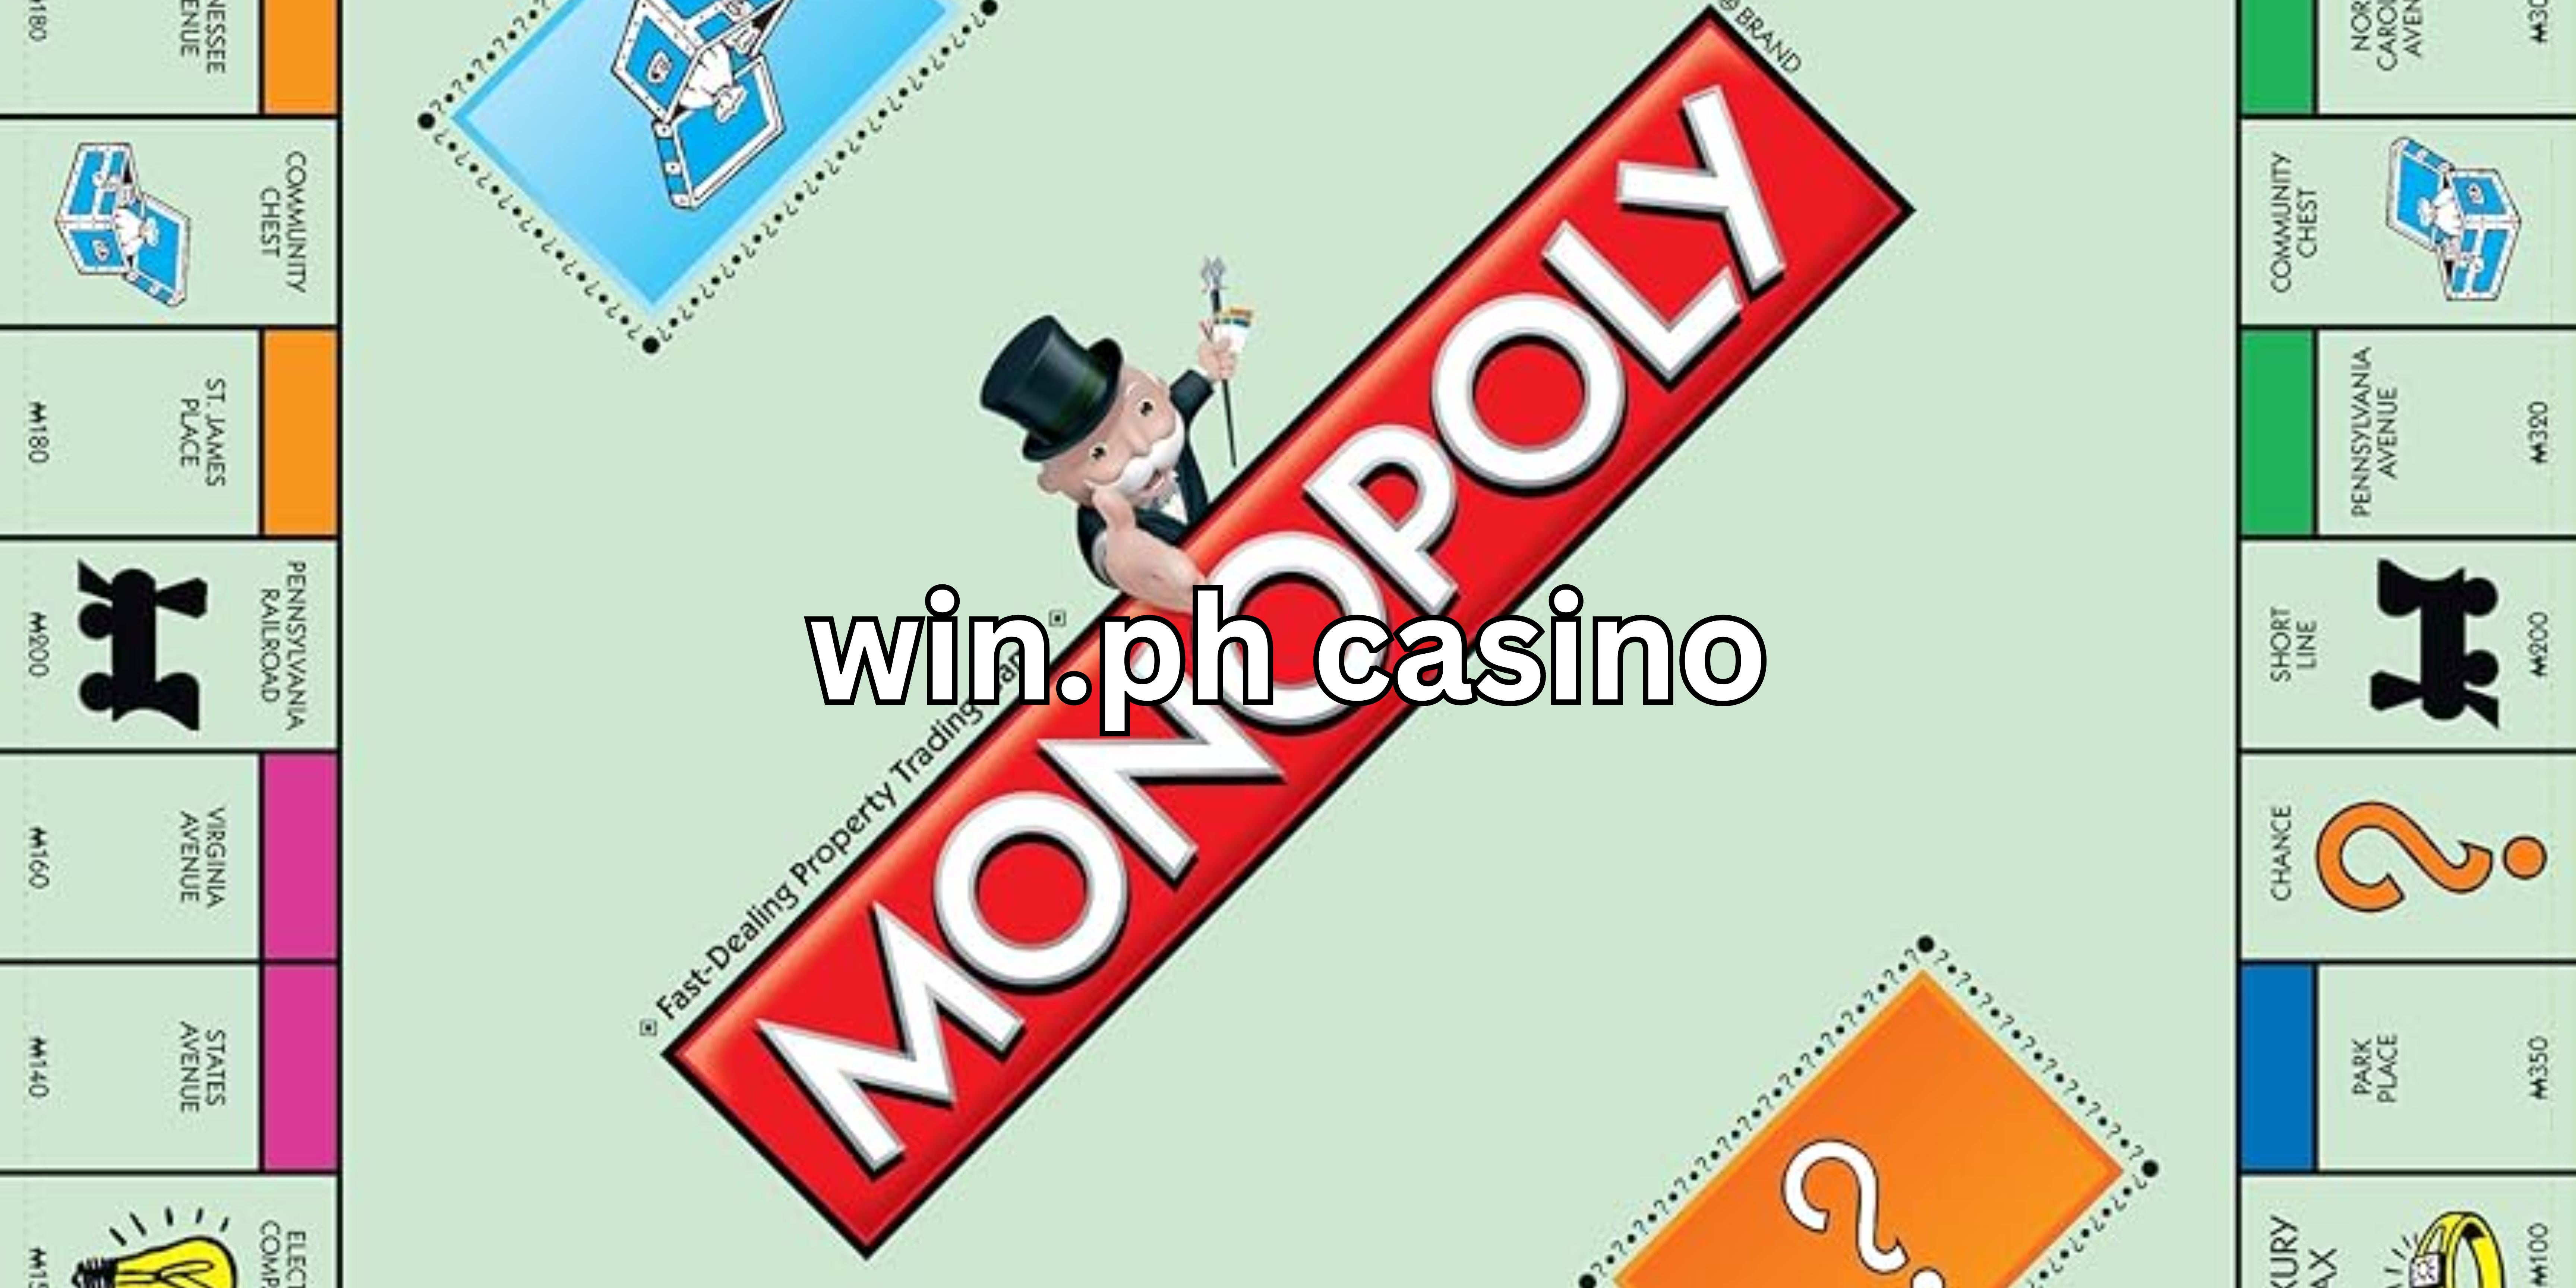 win.ph casino